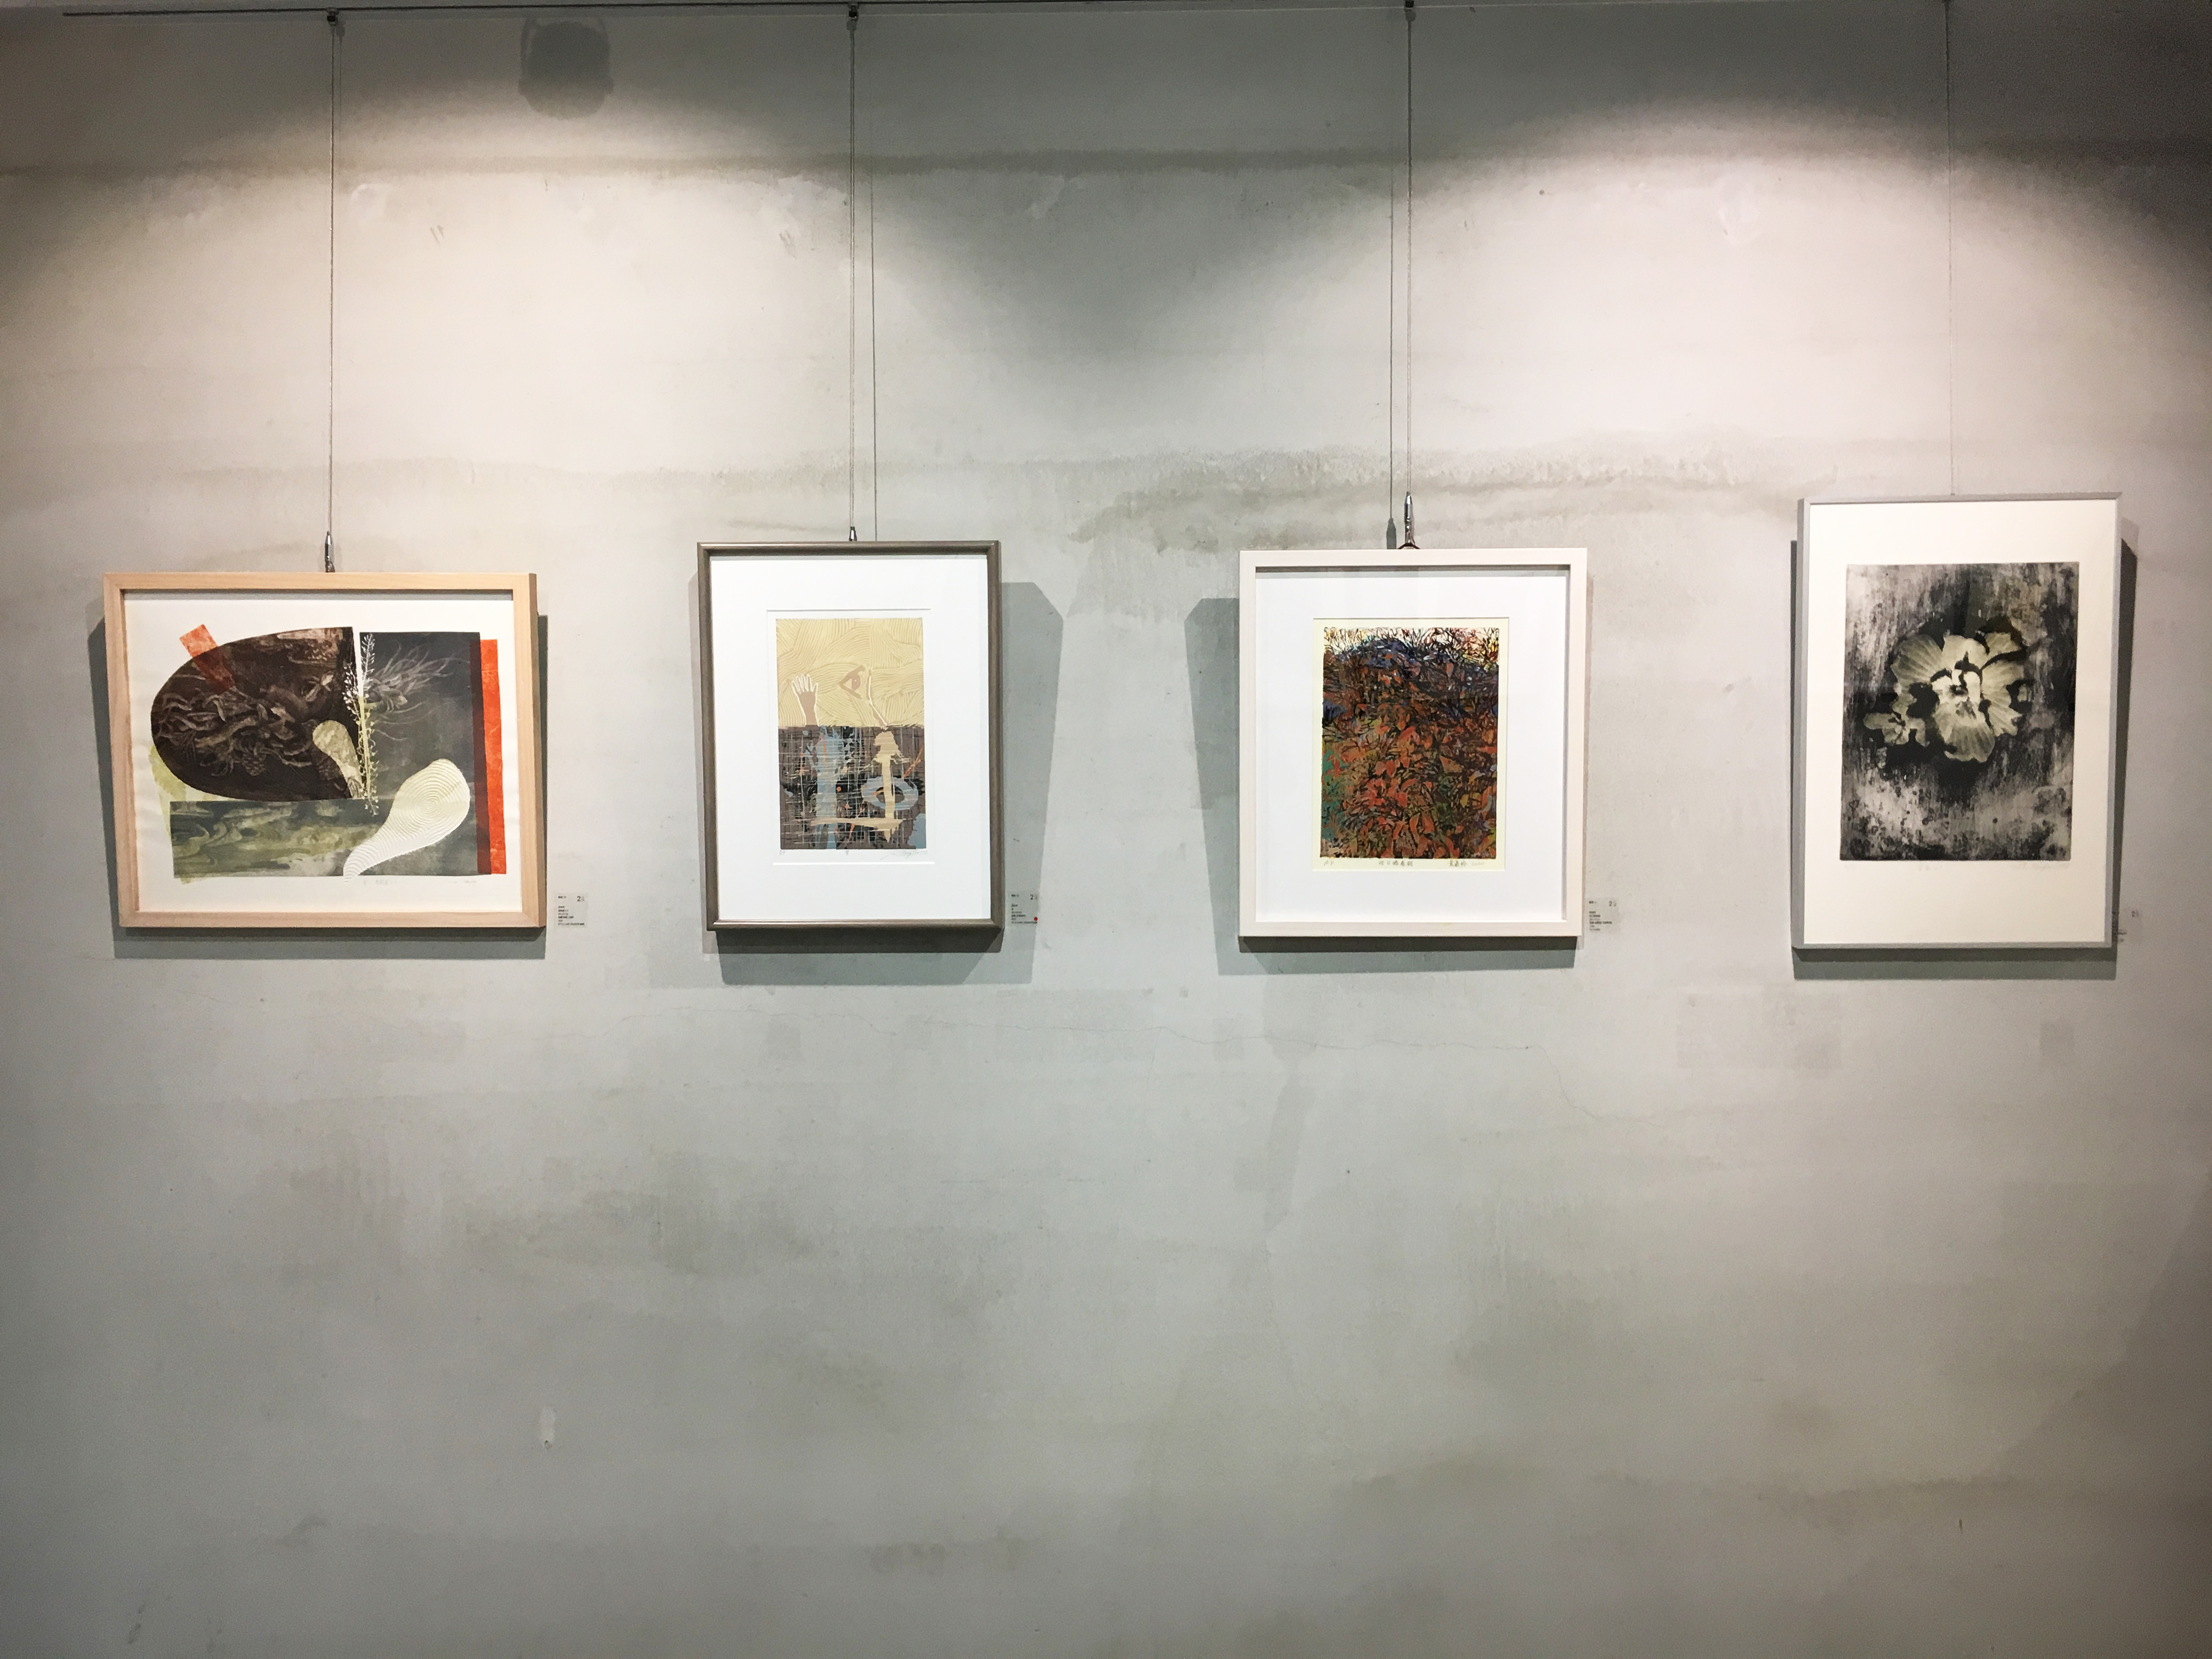 二空間展出臺灣、西班牙藝術家版畫交流展《自然》。